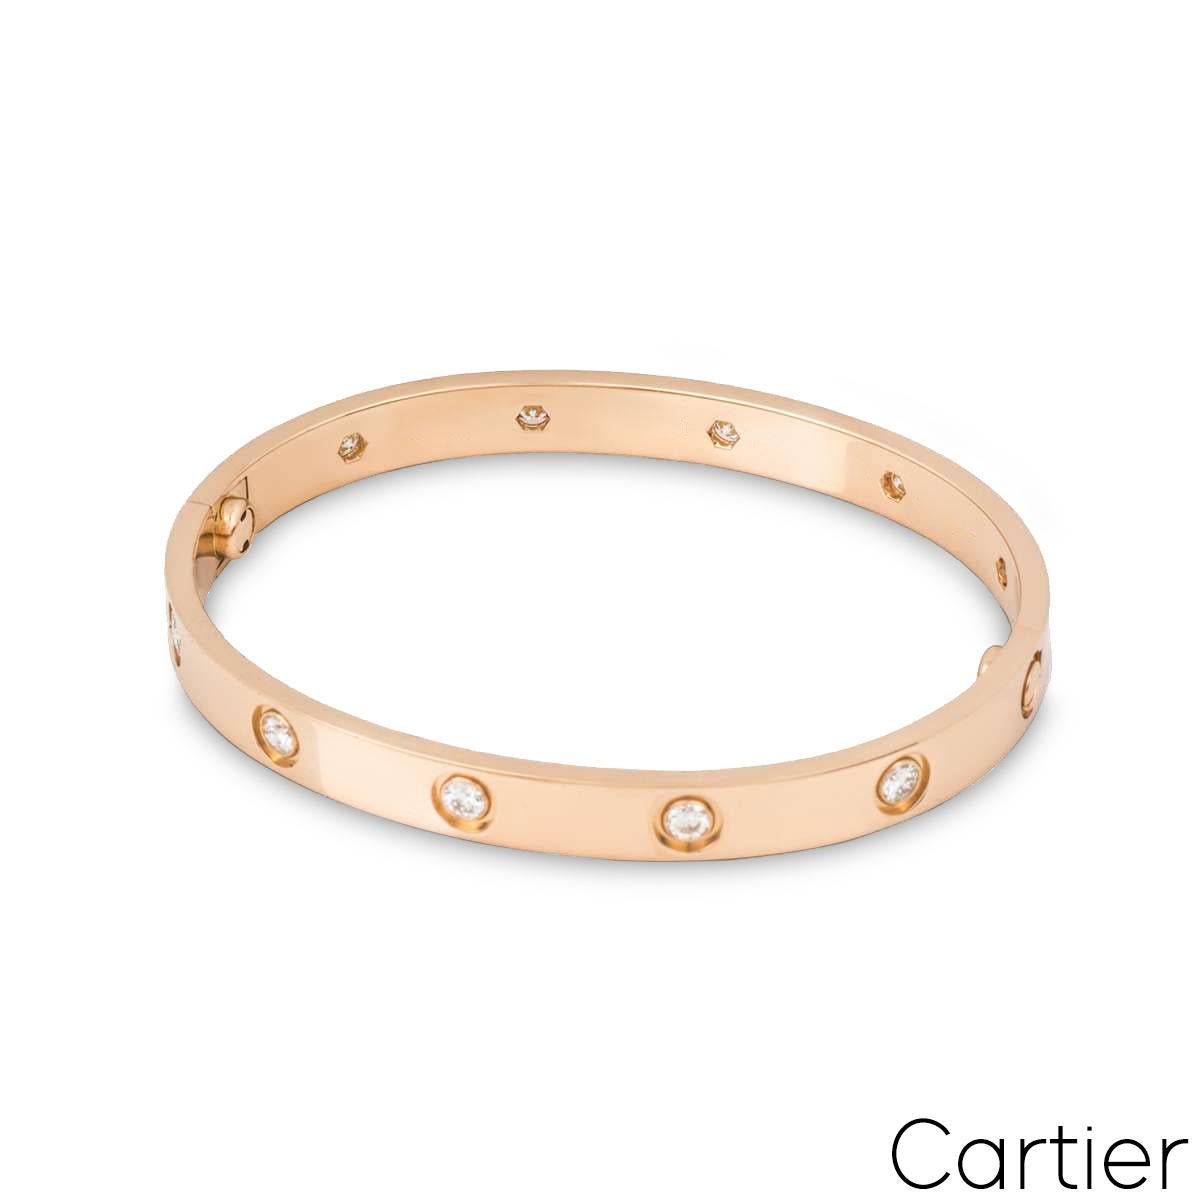 Ein Armband aus 18 Karat Roségold mit Diamanten aus der Kollektion Love von Cartier. Das Armband ist mit 10 runden Diamanten im Brillantschliff besetzt, die am äußeren Rand in einer Rubover-Fassung von insgesamt 0,96 ct. umlaufen. Der Armreif hat